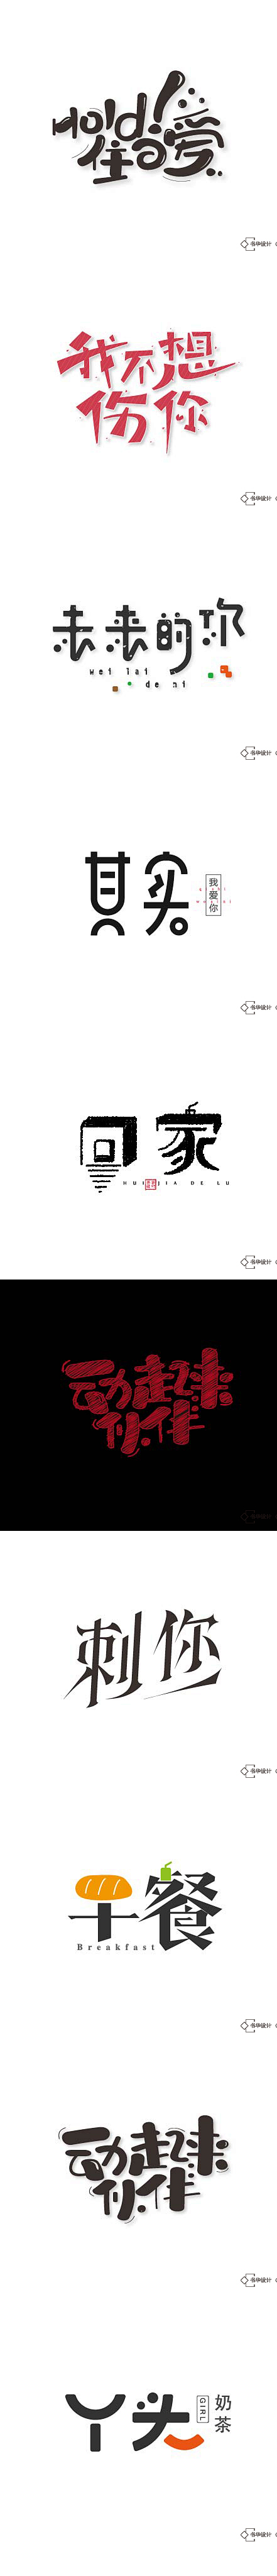 字道2_字体传奇网-中国首个字体品牌设计...